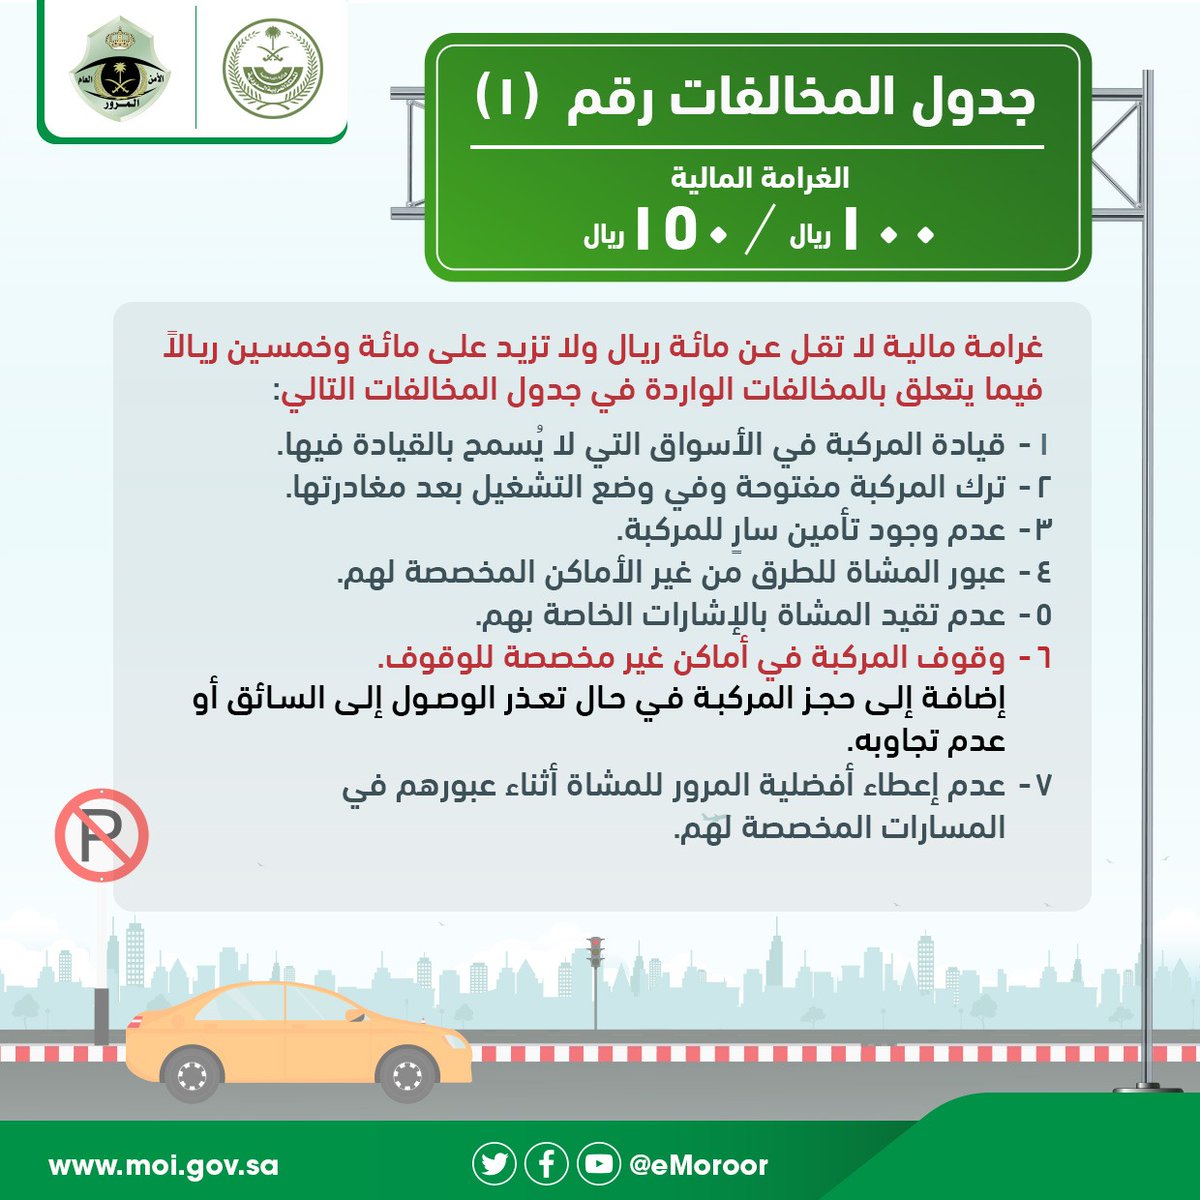 جدول مخالفات المرور في السعودية